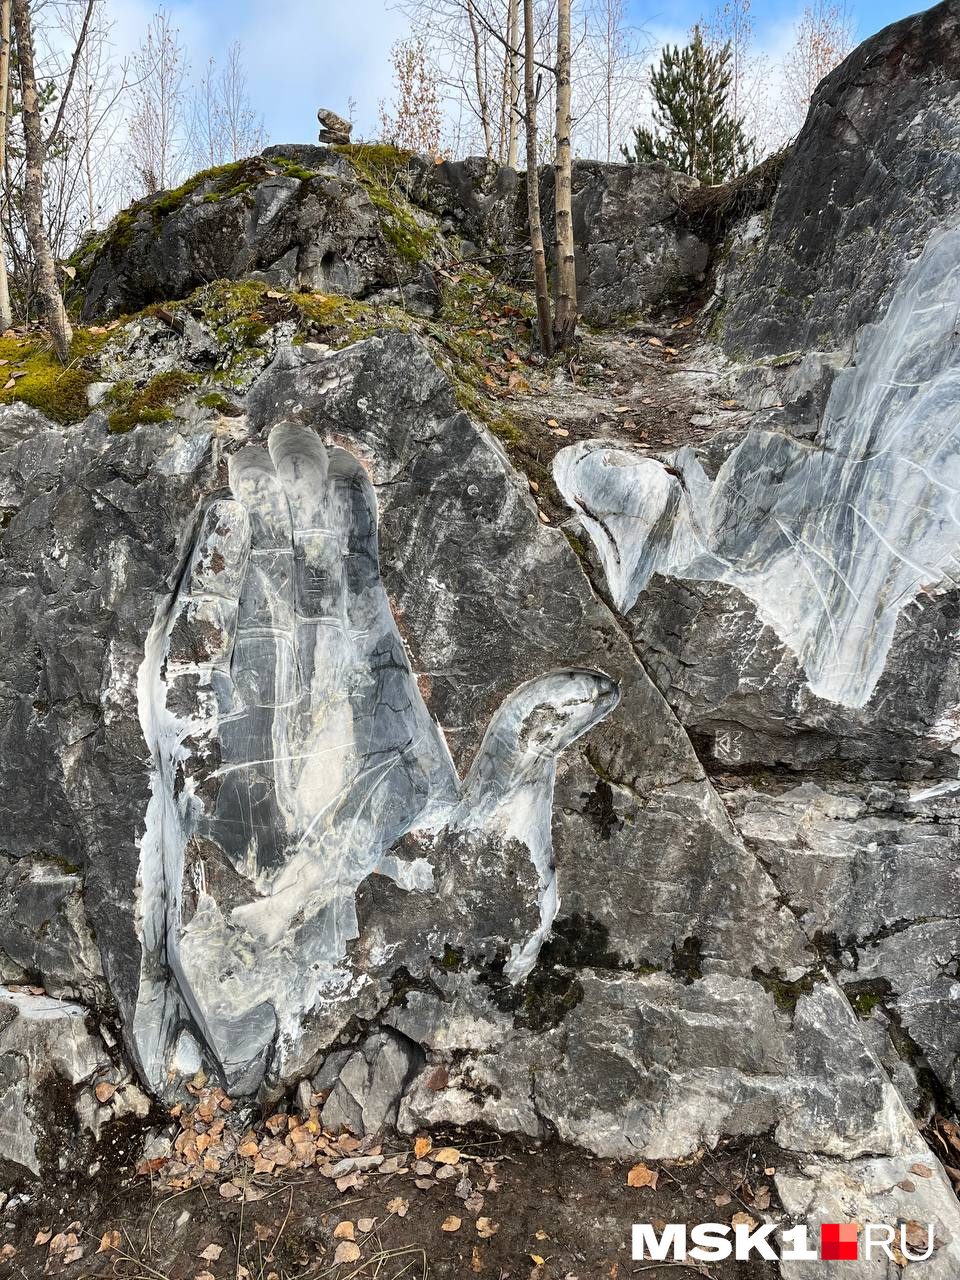 В горном парке «Рускеала» можно полюбоваться творчеством местных художников, выполненным прямо на мраморных скалах